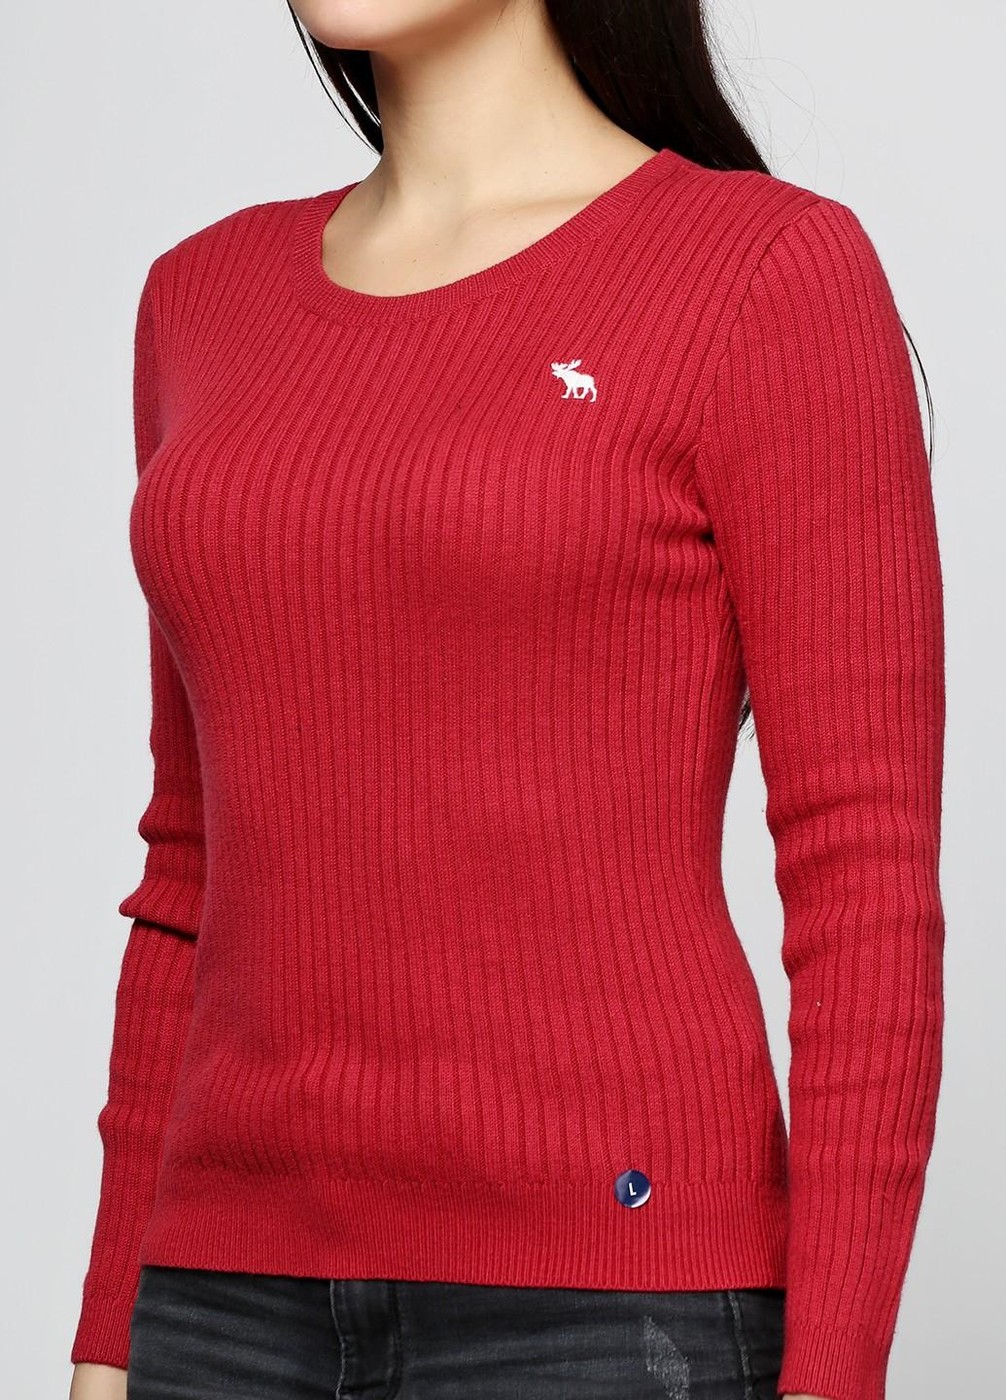 Свитер женский - свитер Abercrombie & Fitch, S/XS, S/XS